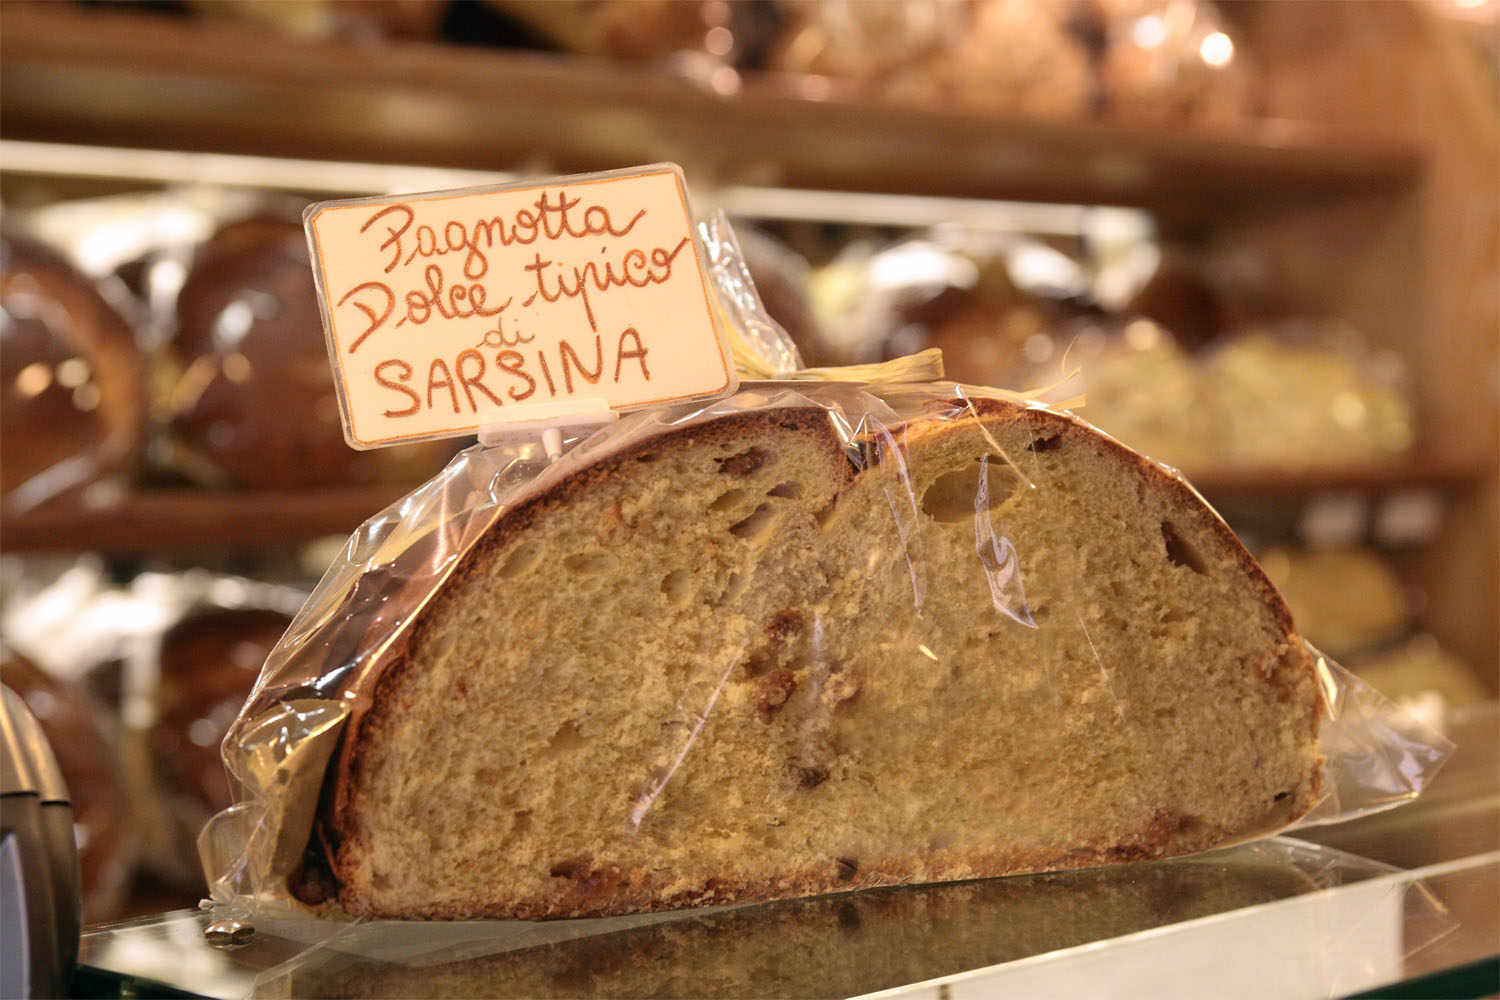 The bread of Sarsina.